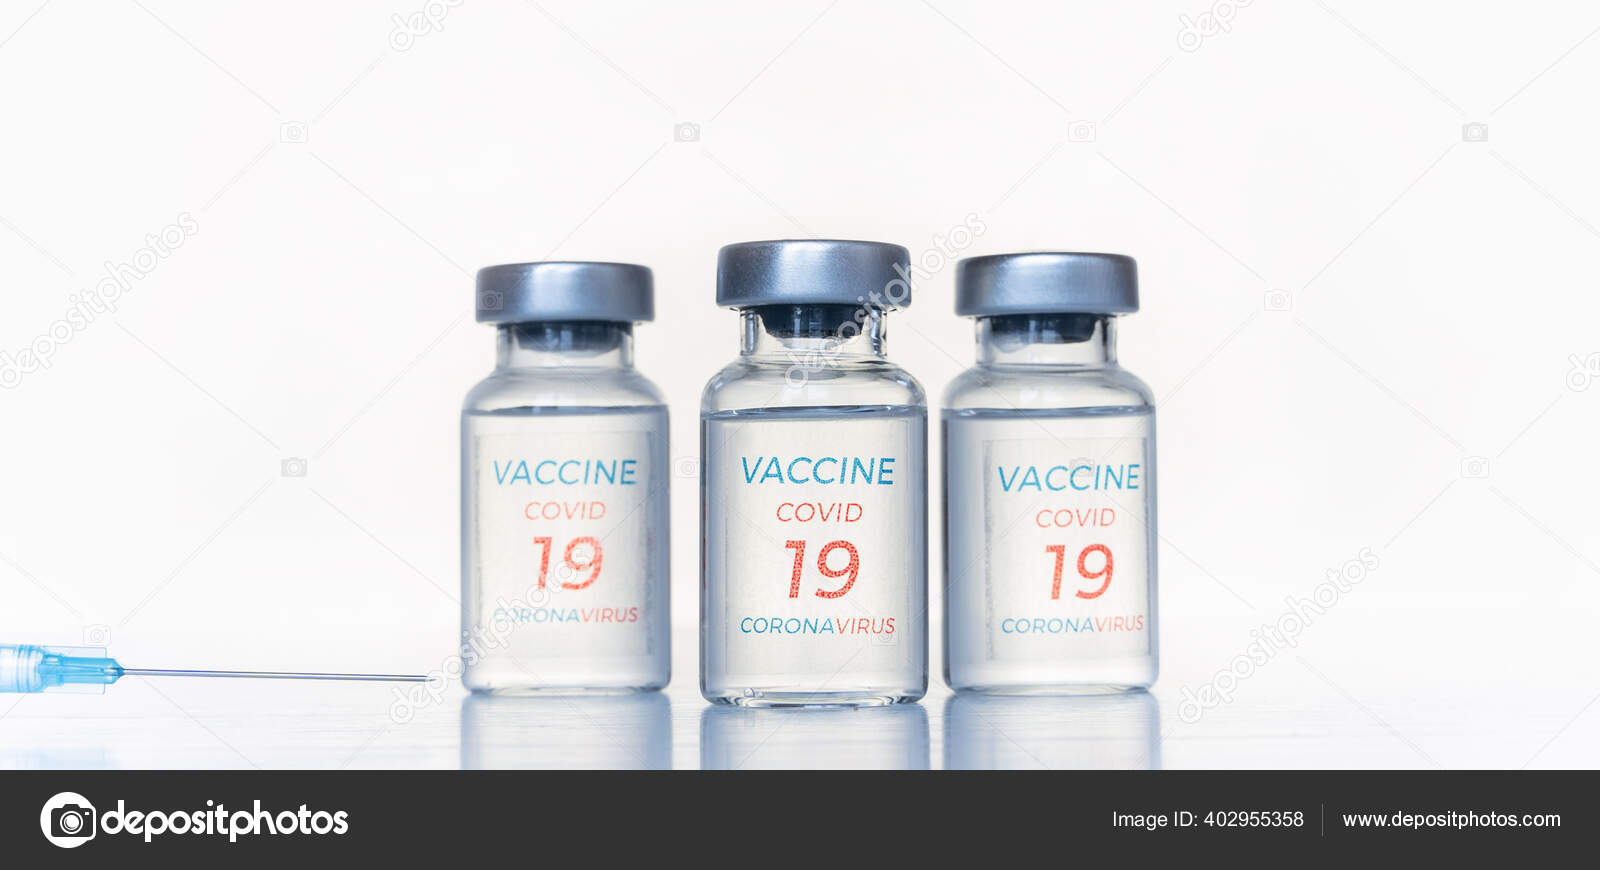 какая вакцина занимает первое место в мире